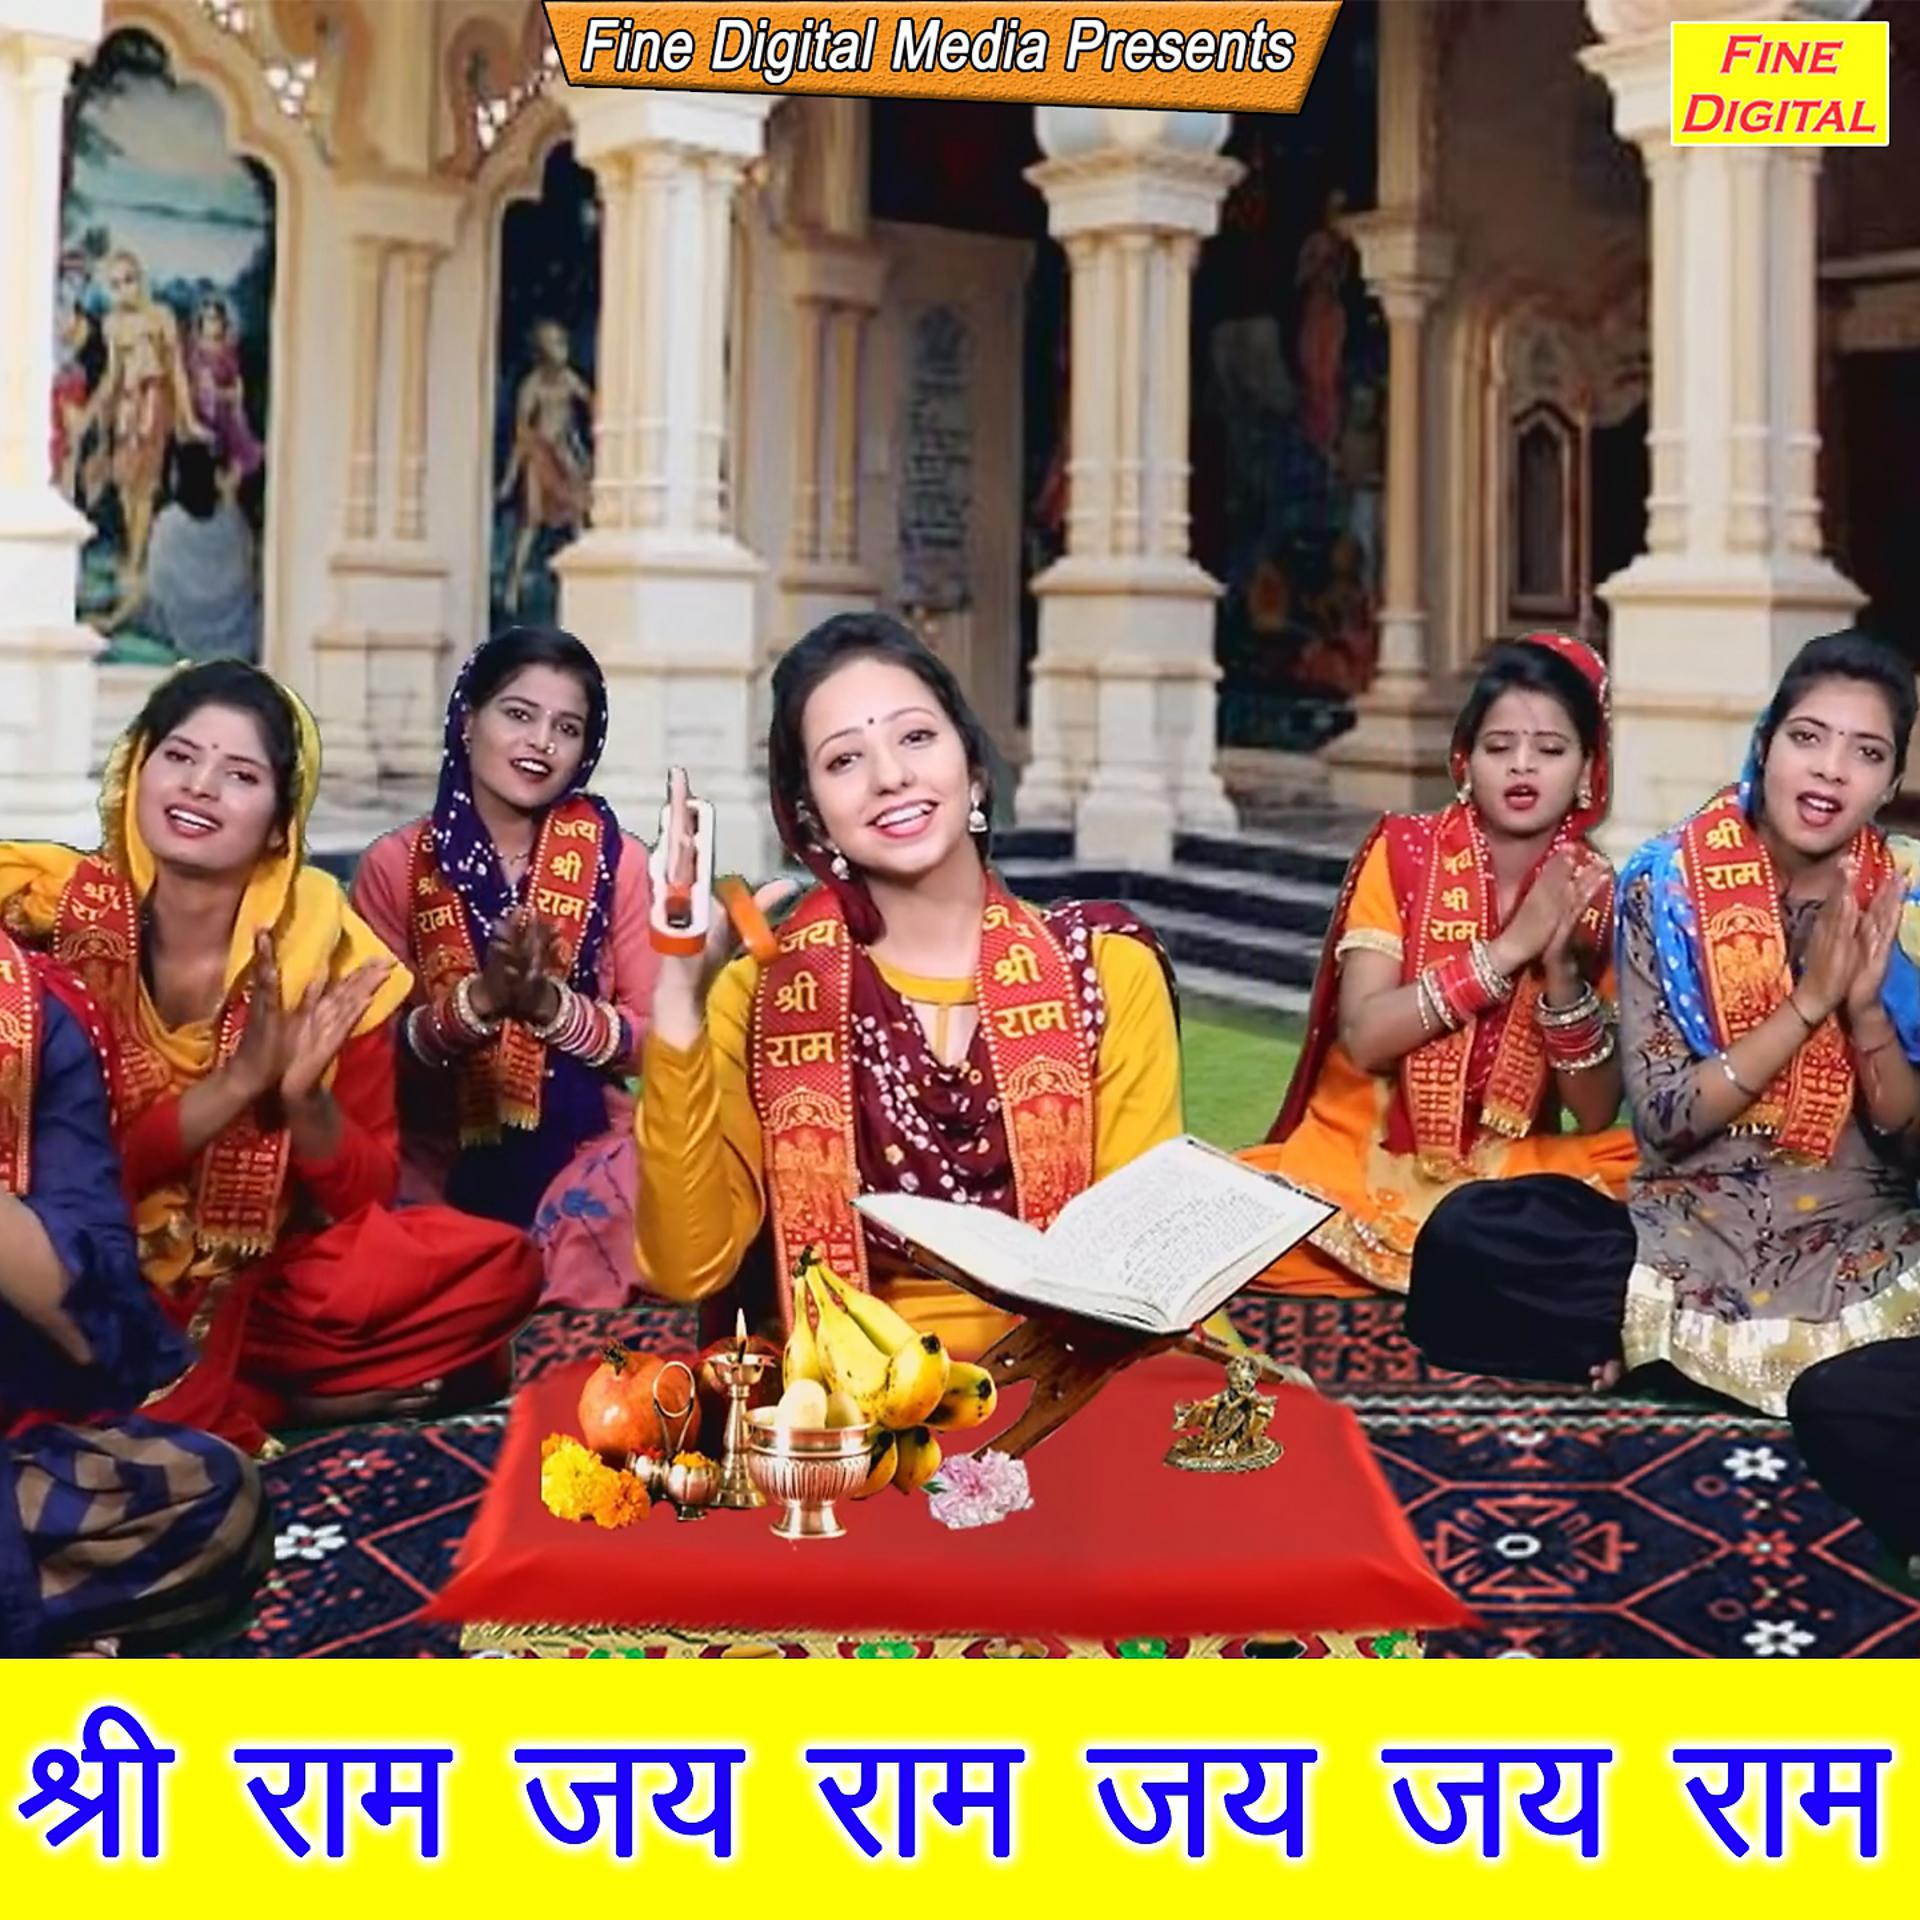 Постер альбома Shri Ram Jai Ram Jai Jai Ram